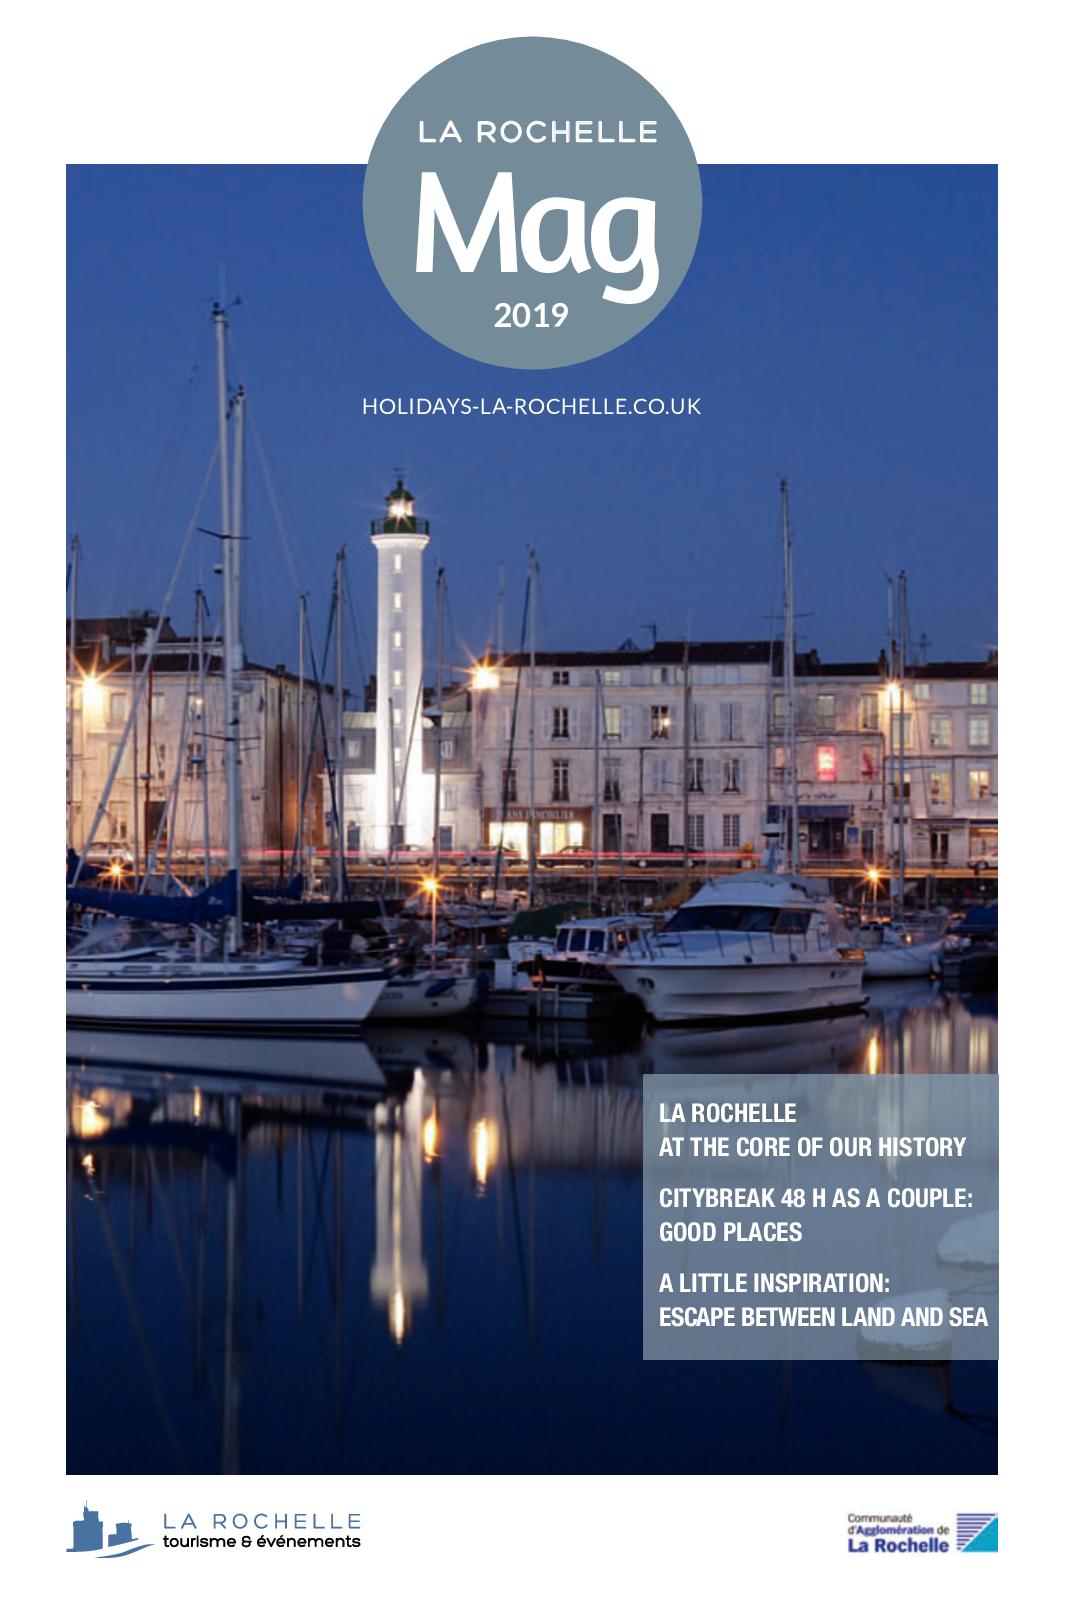 Salon De Jardin 5 Places Inspirant Calaméo La Rochelle City Guide 2019